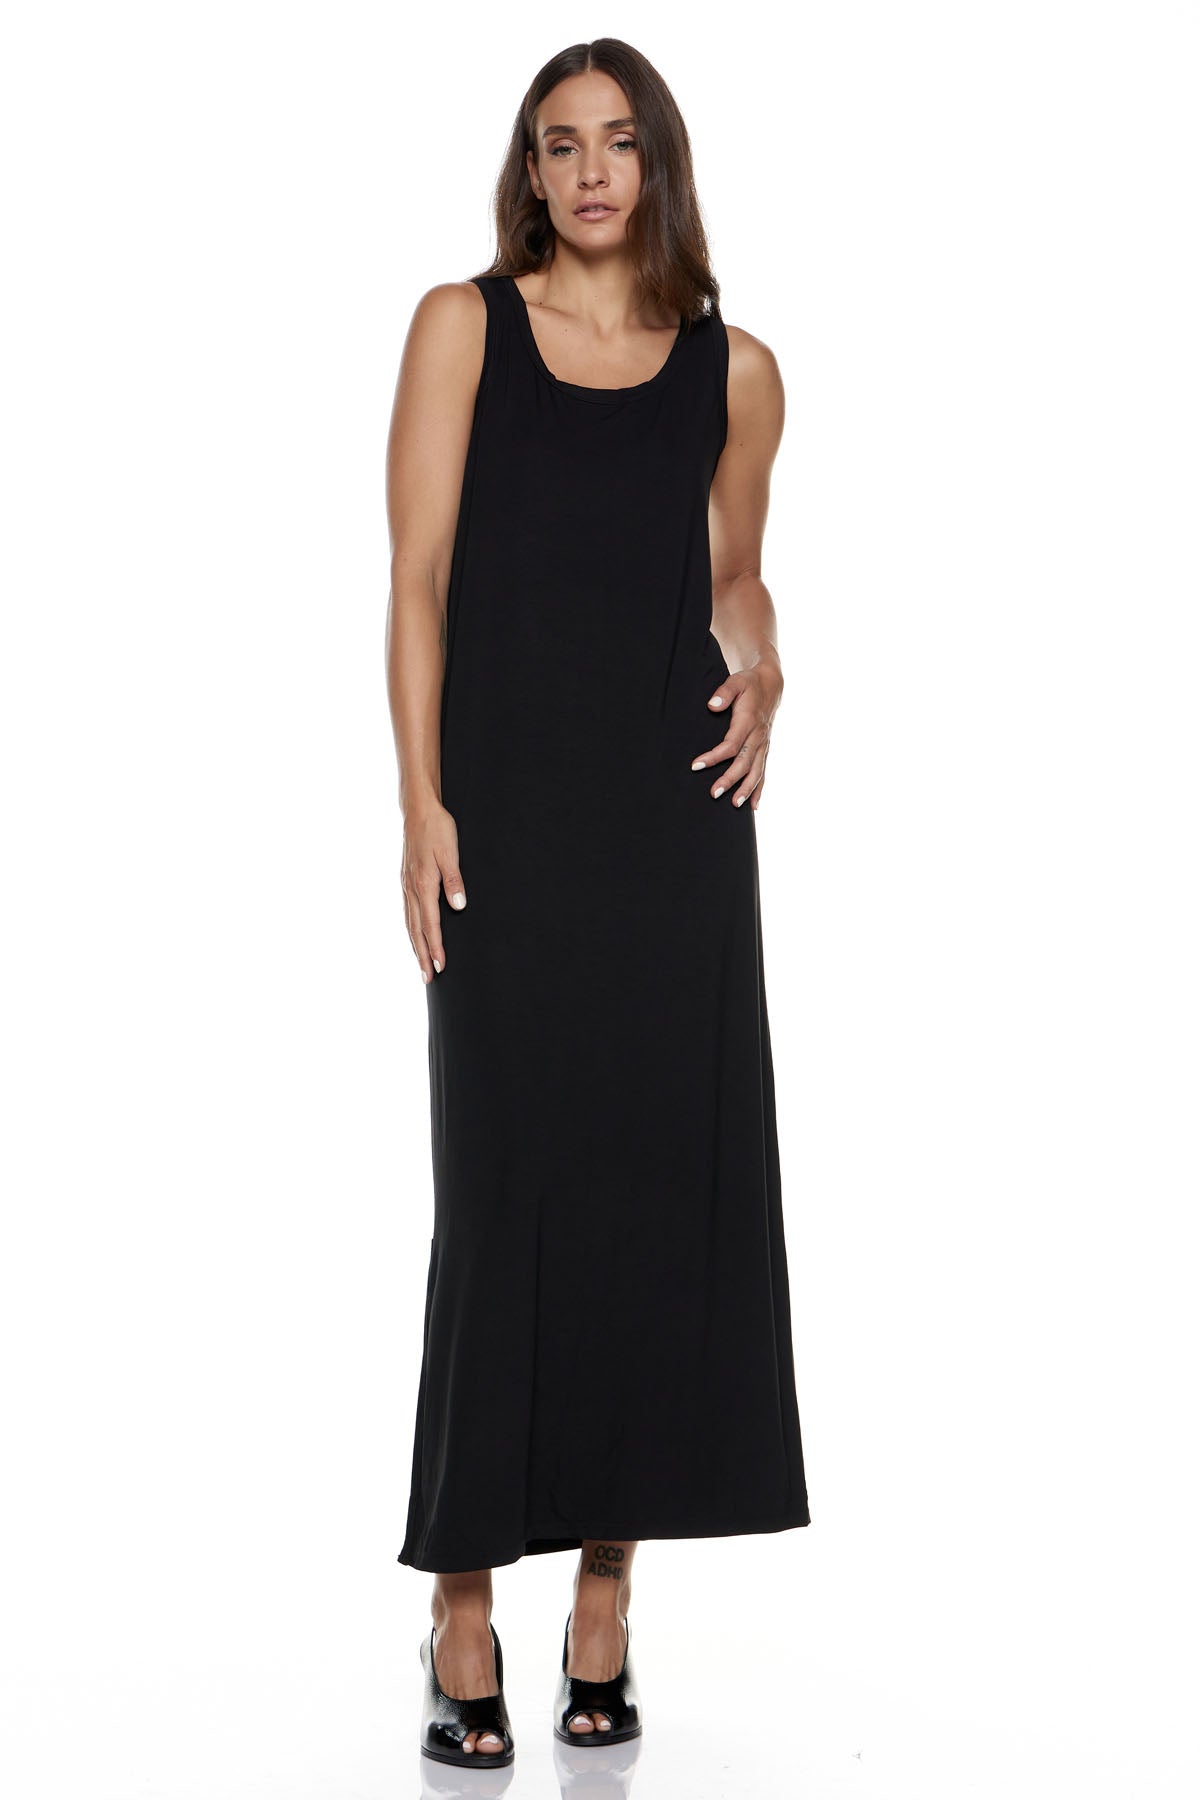 Chic & Simple Φόρεμα (Basics) Φατιόνα - Μαύρο